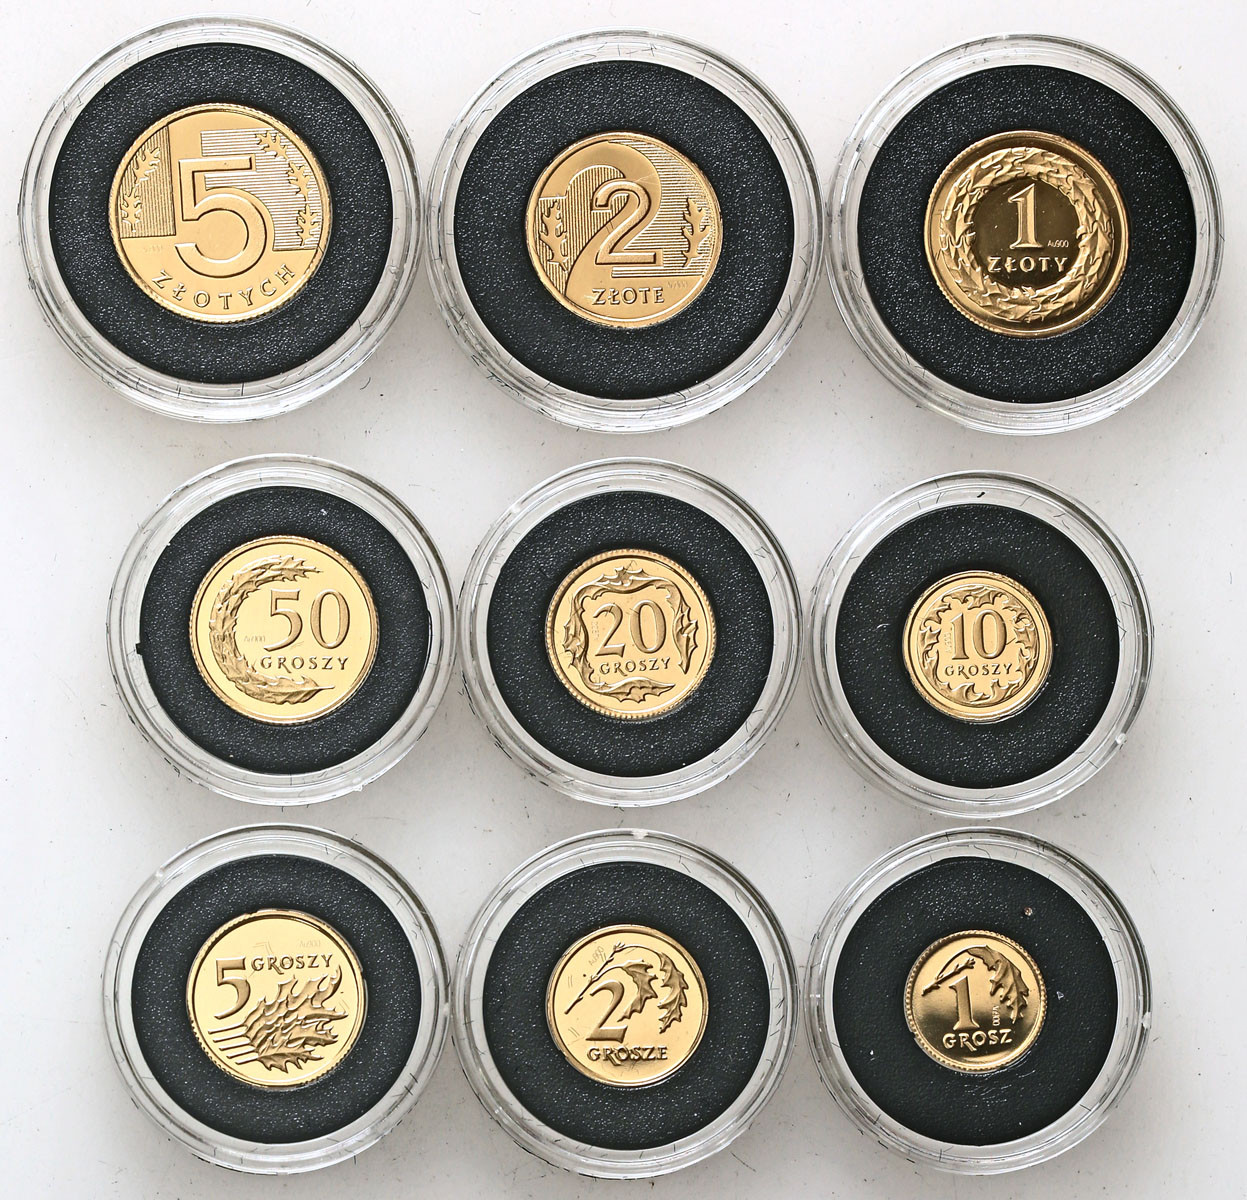 III RP. Miniatury polskich monet obiegowych 1 grosz do 5 złotych 2008, zestaw ZŁOTY, 9 sztuk